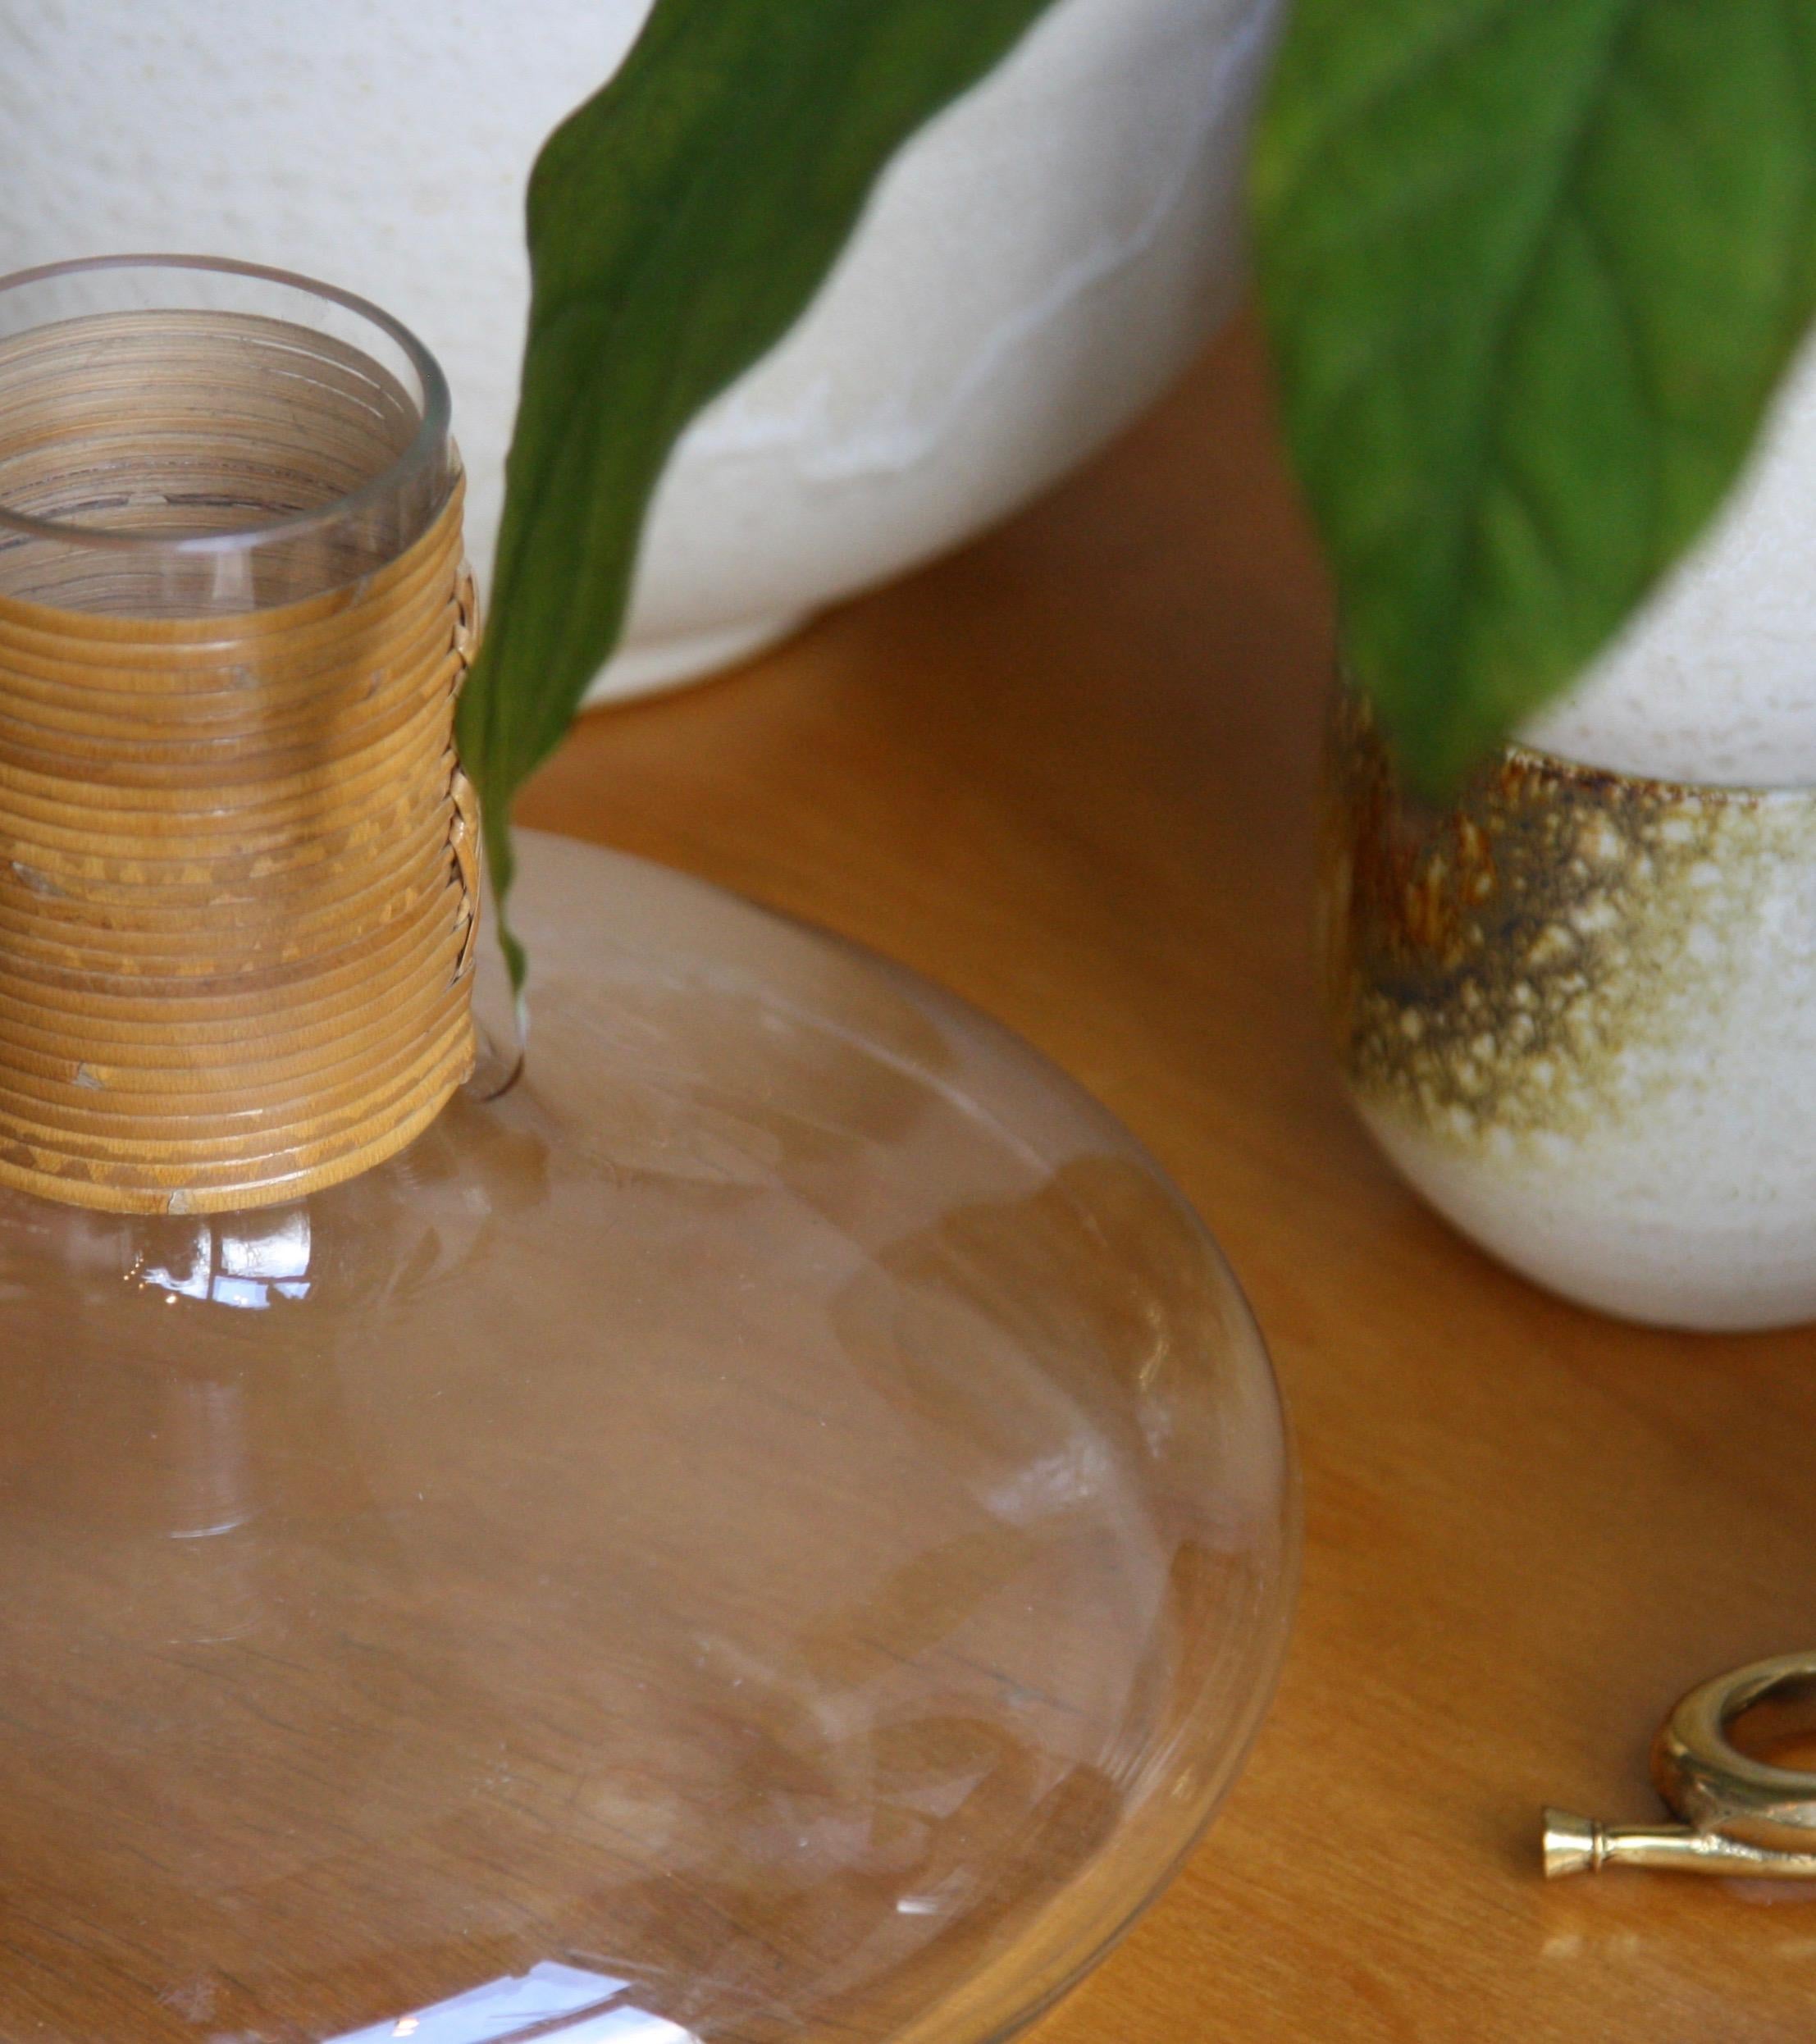 Austrian Carl Auböck Vintage Squashed-Sphere Shaped Glass Vase or “Tuberkulinkolben”